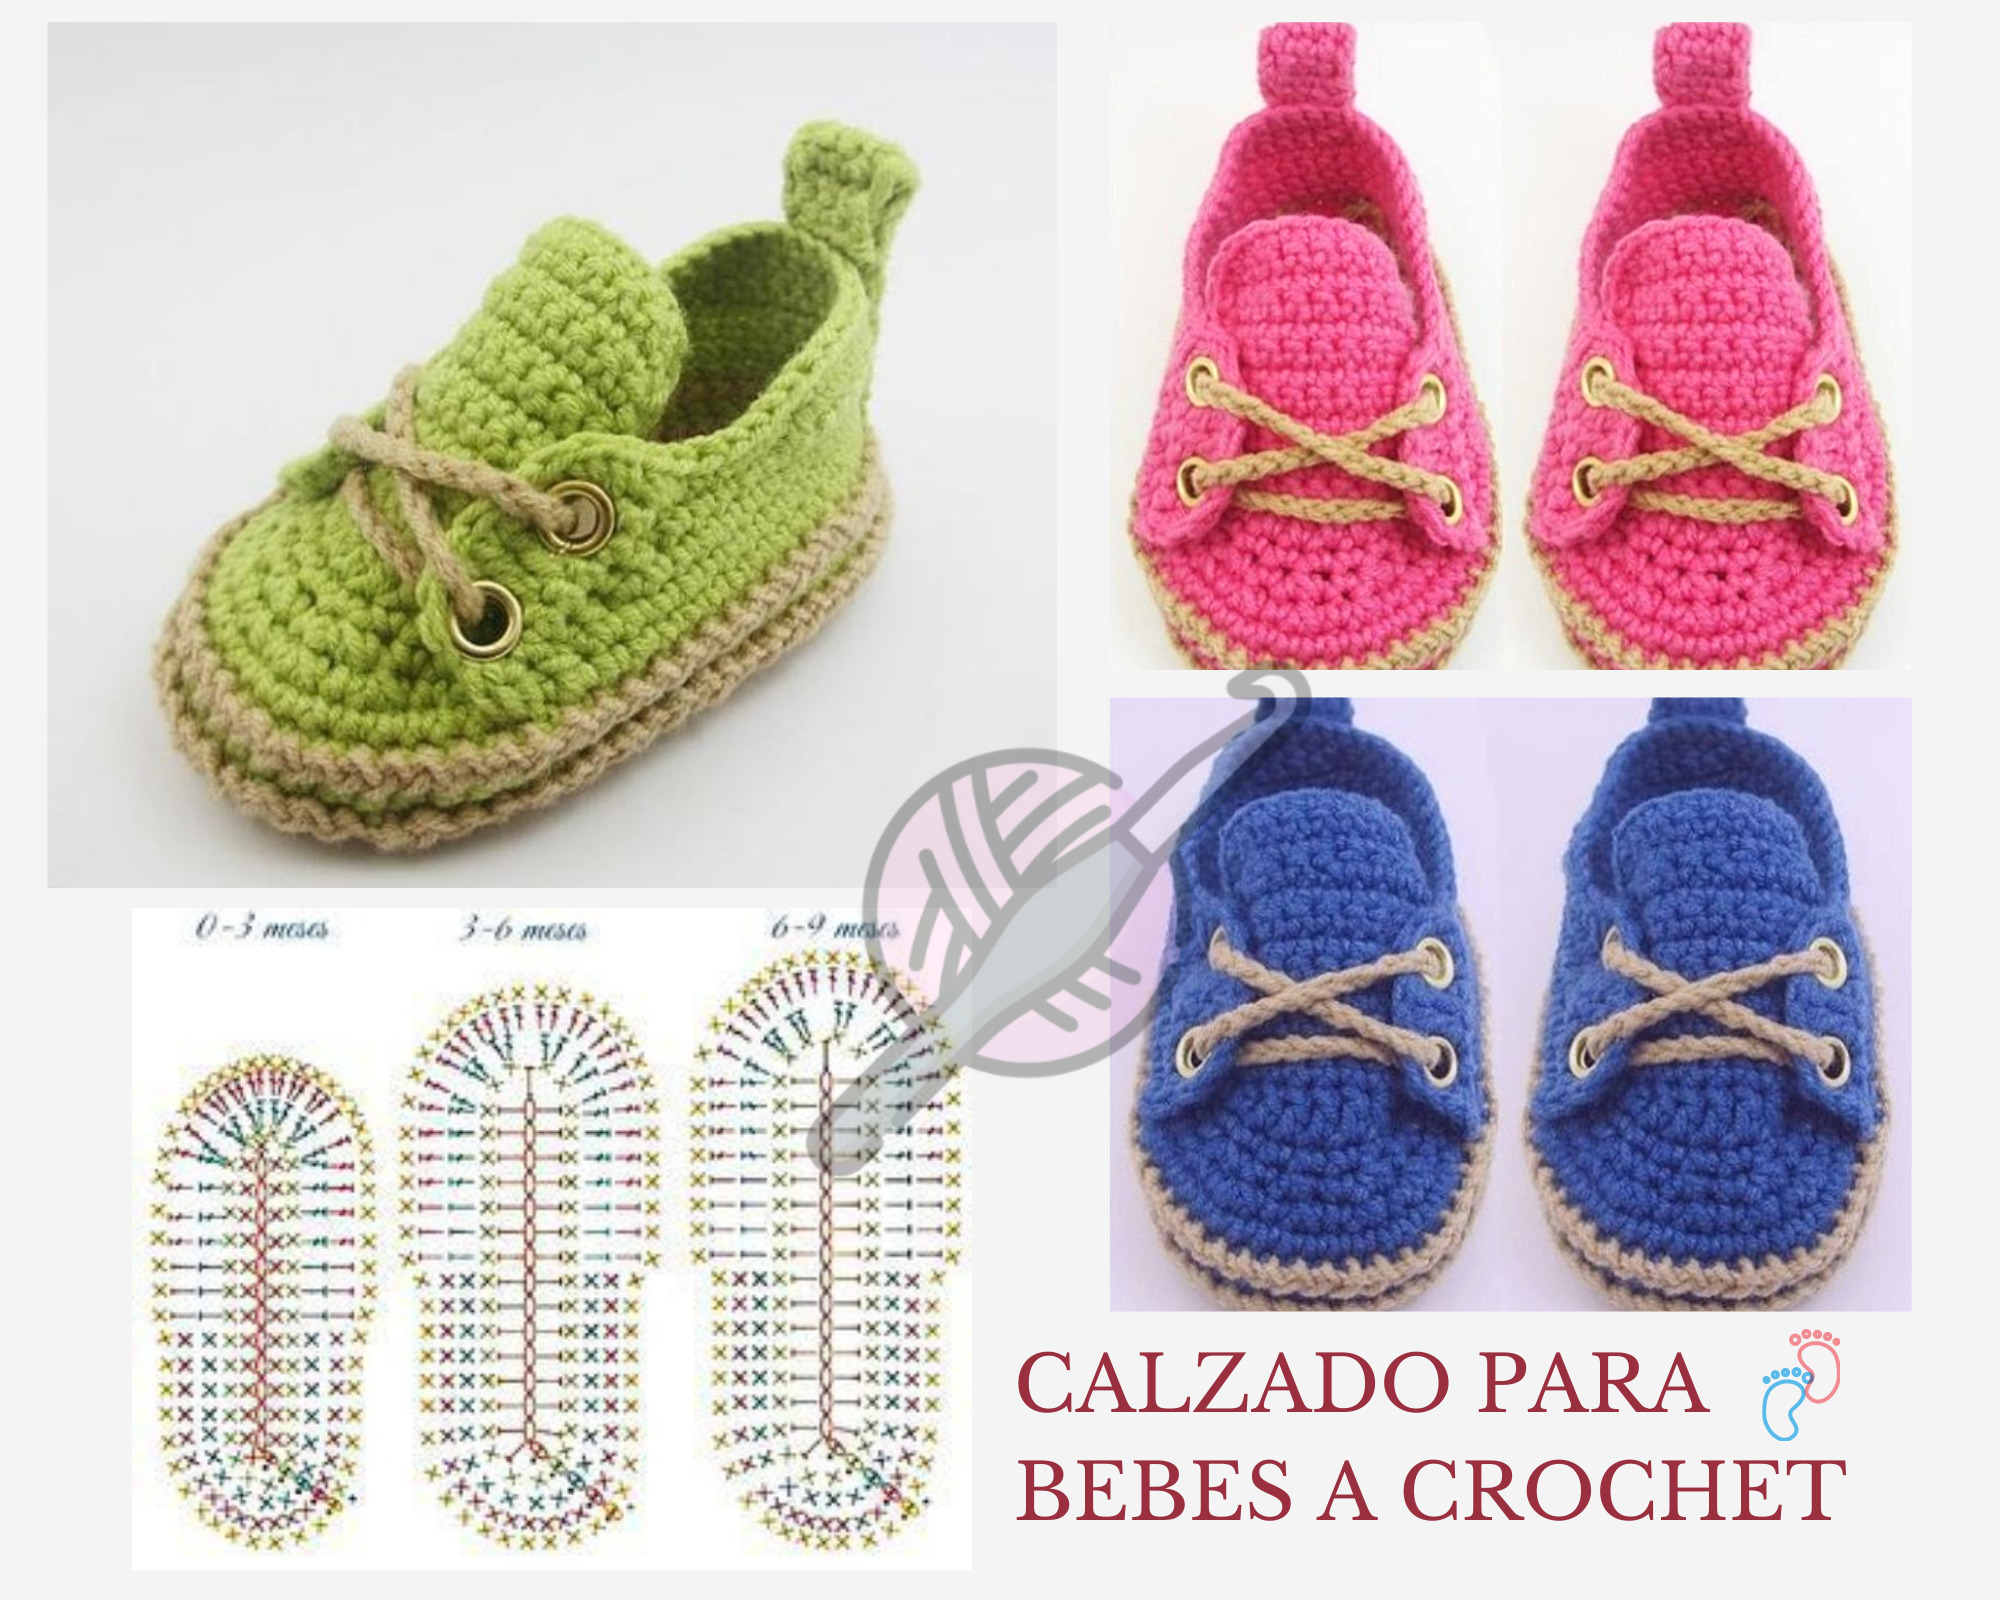 Instrumento pasillo rizo 80 Patrones para hacer zapatitos, botines de bebés a crochet - Crochetisimo